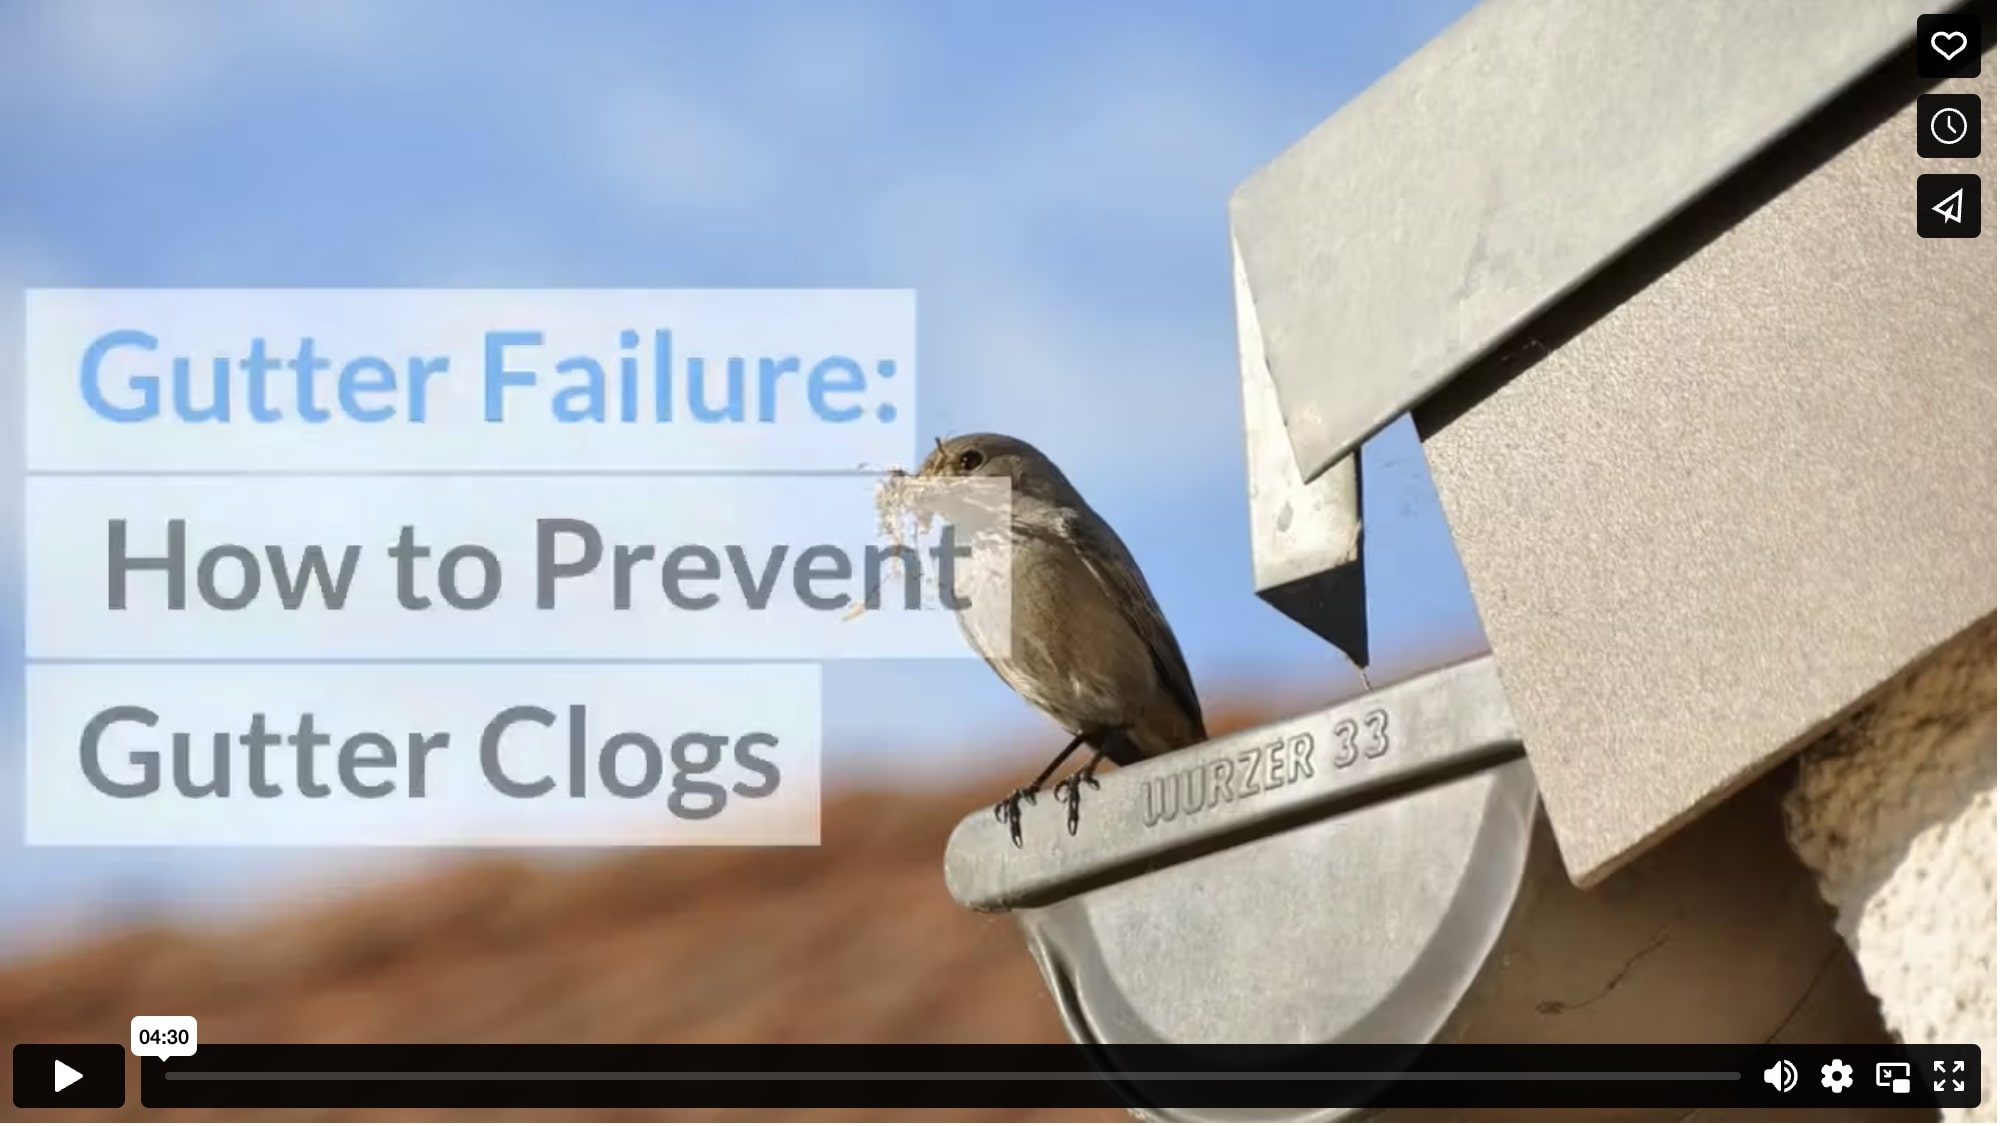 Gutter Failure: How to Prevent Gutter Clogs